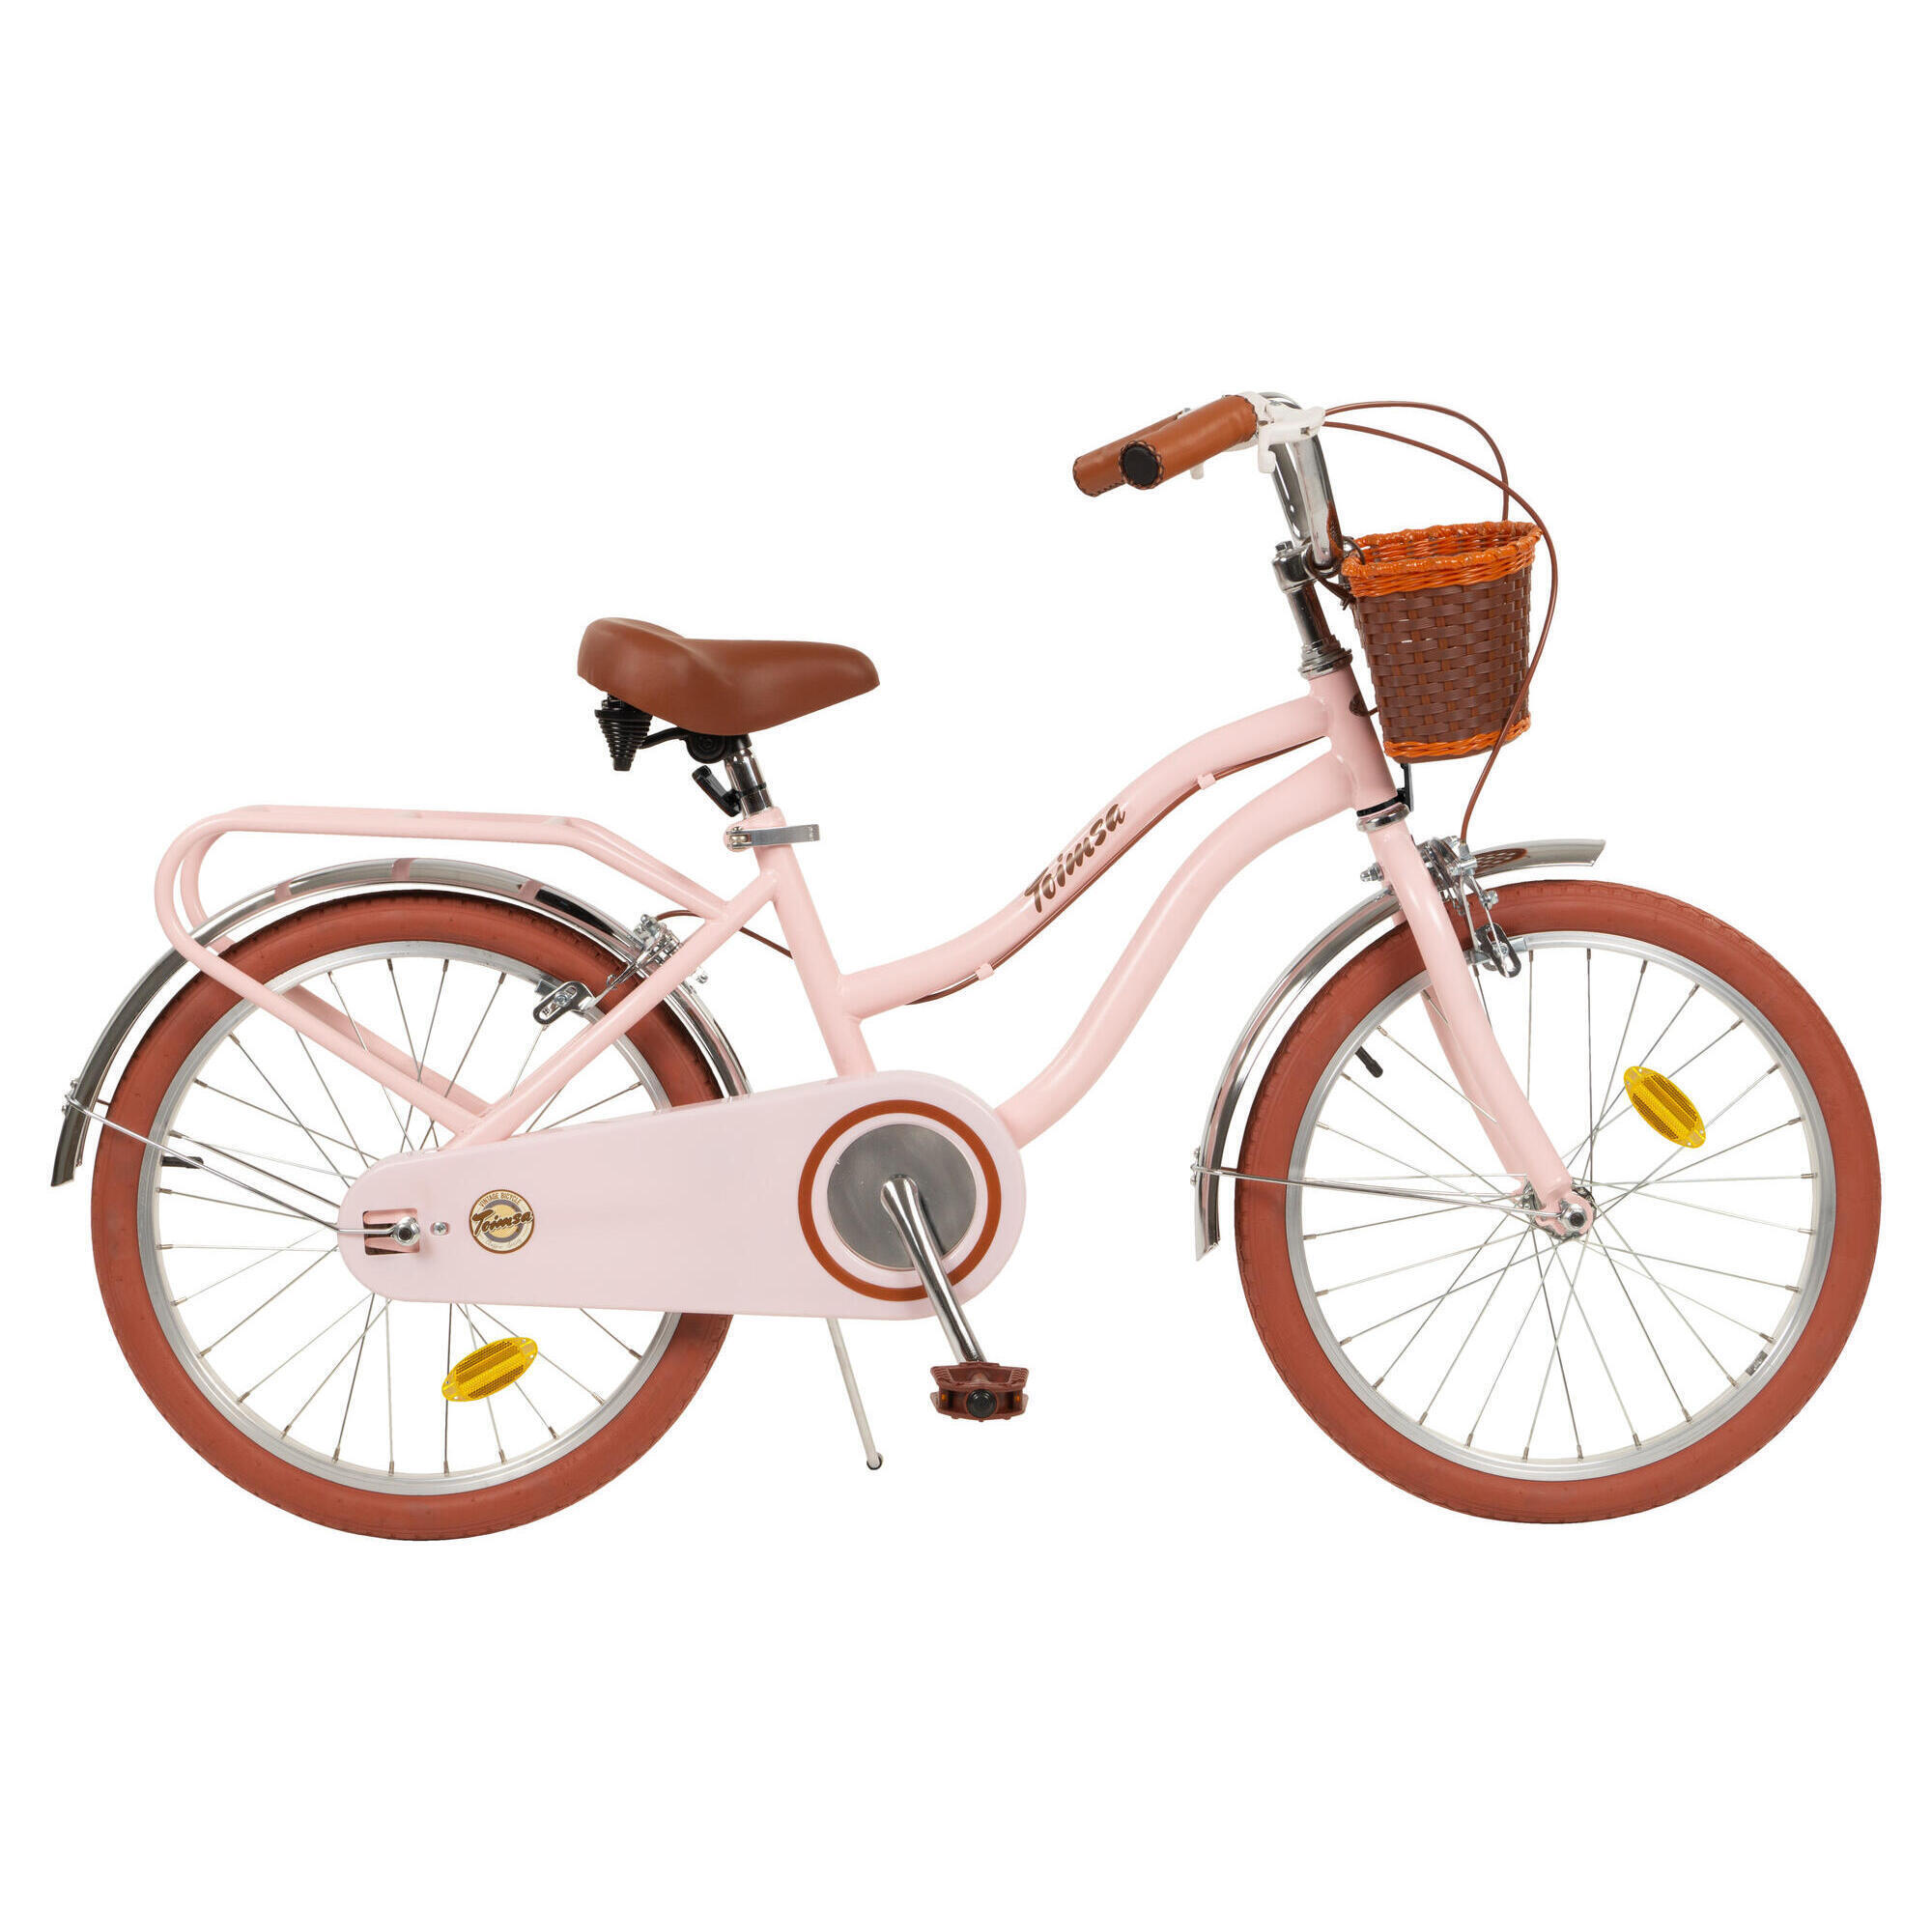 TOIMSA 20" Vintage Bicycle - Pink